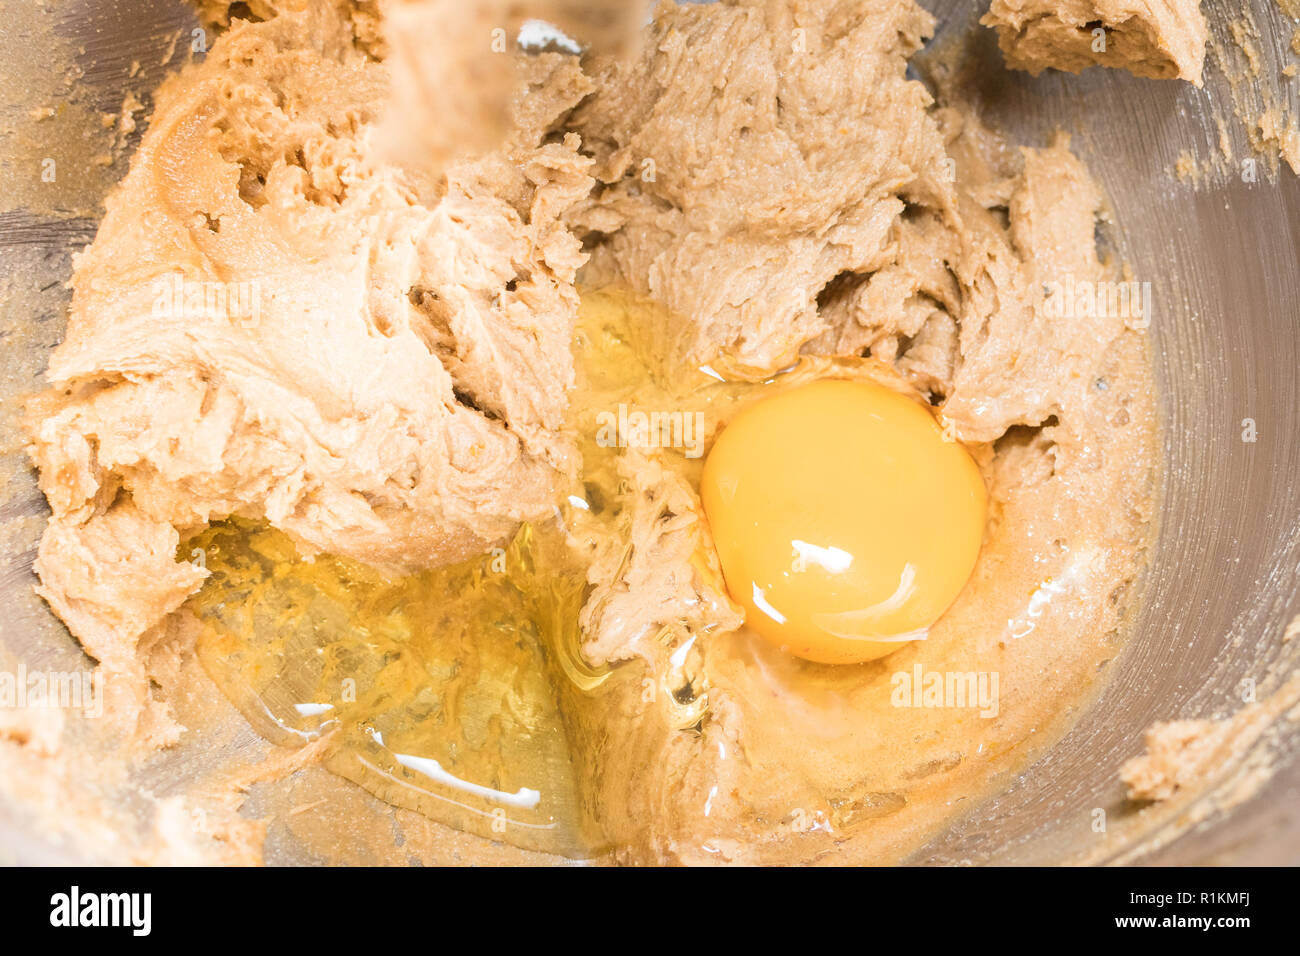 Kuchen backen - Hinzufügen Ei brauner Zucker und Butter zu Sahne - Kuchen Mischung Stockfoto